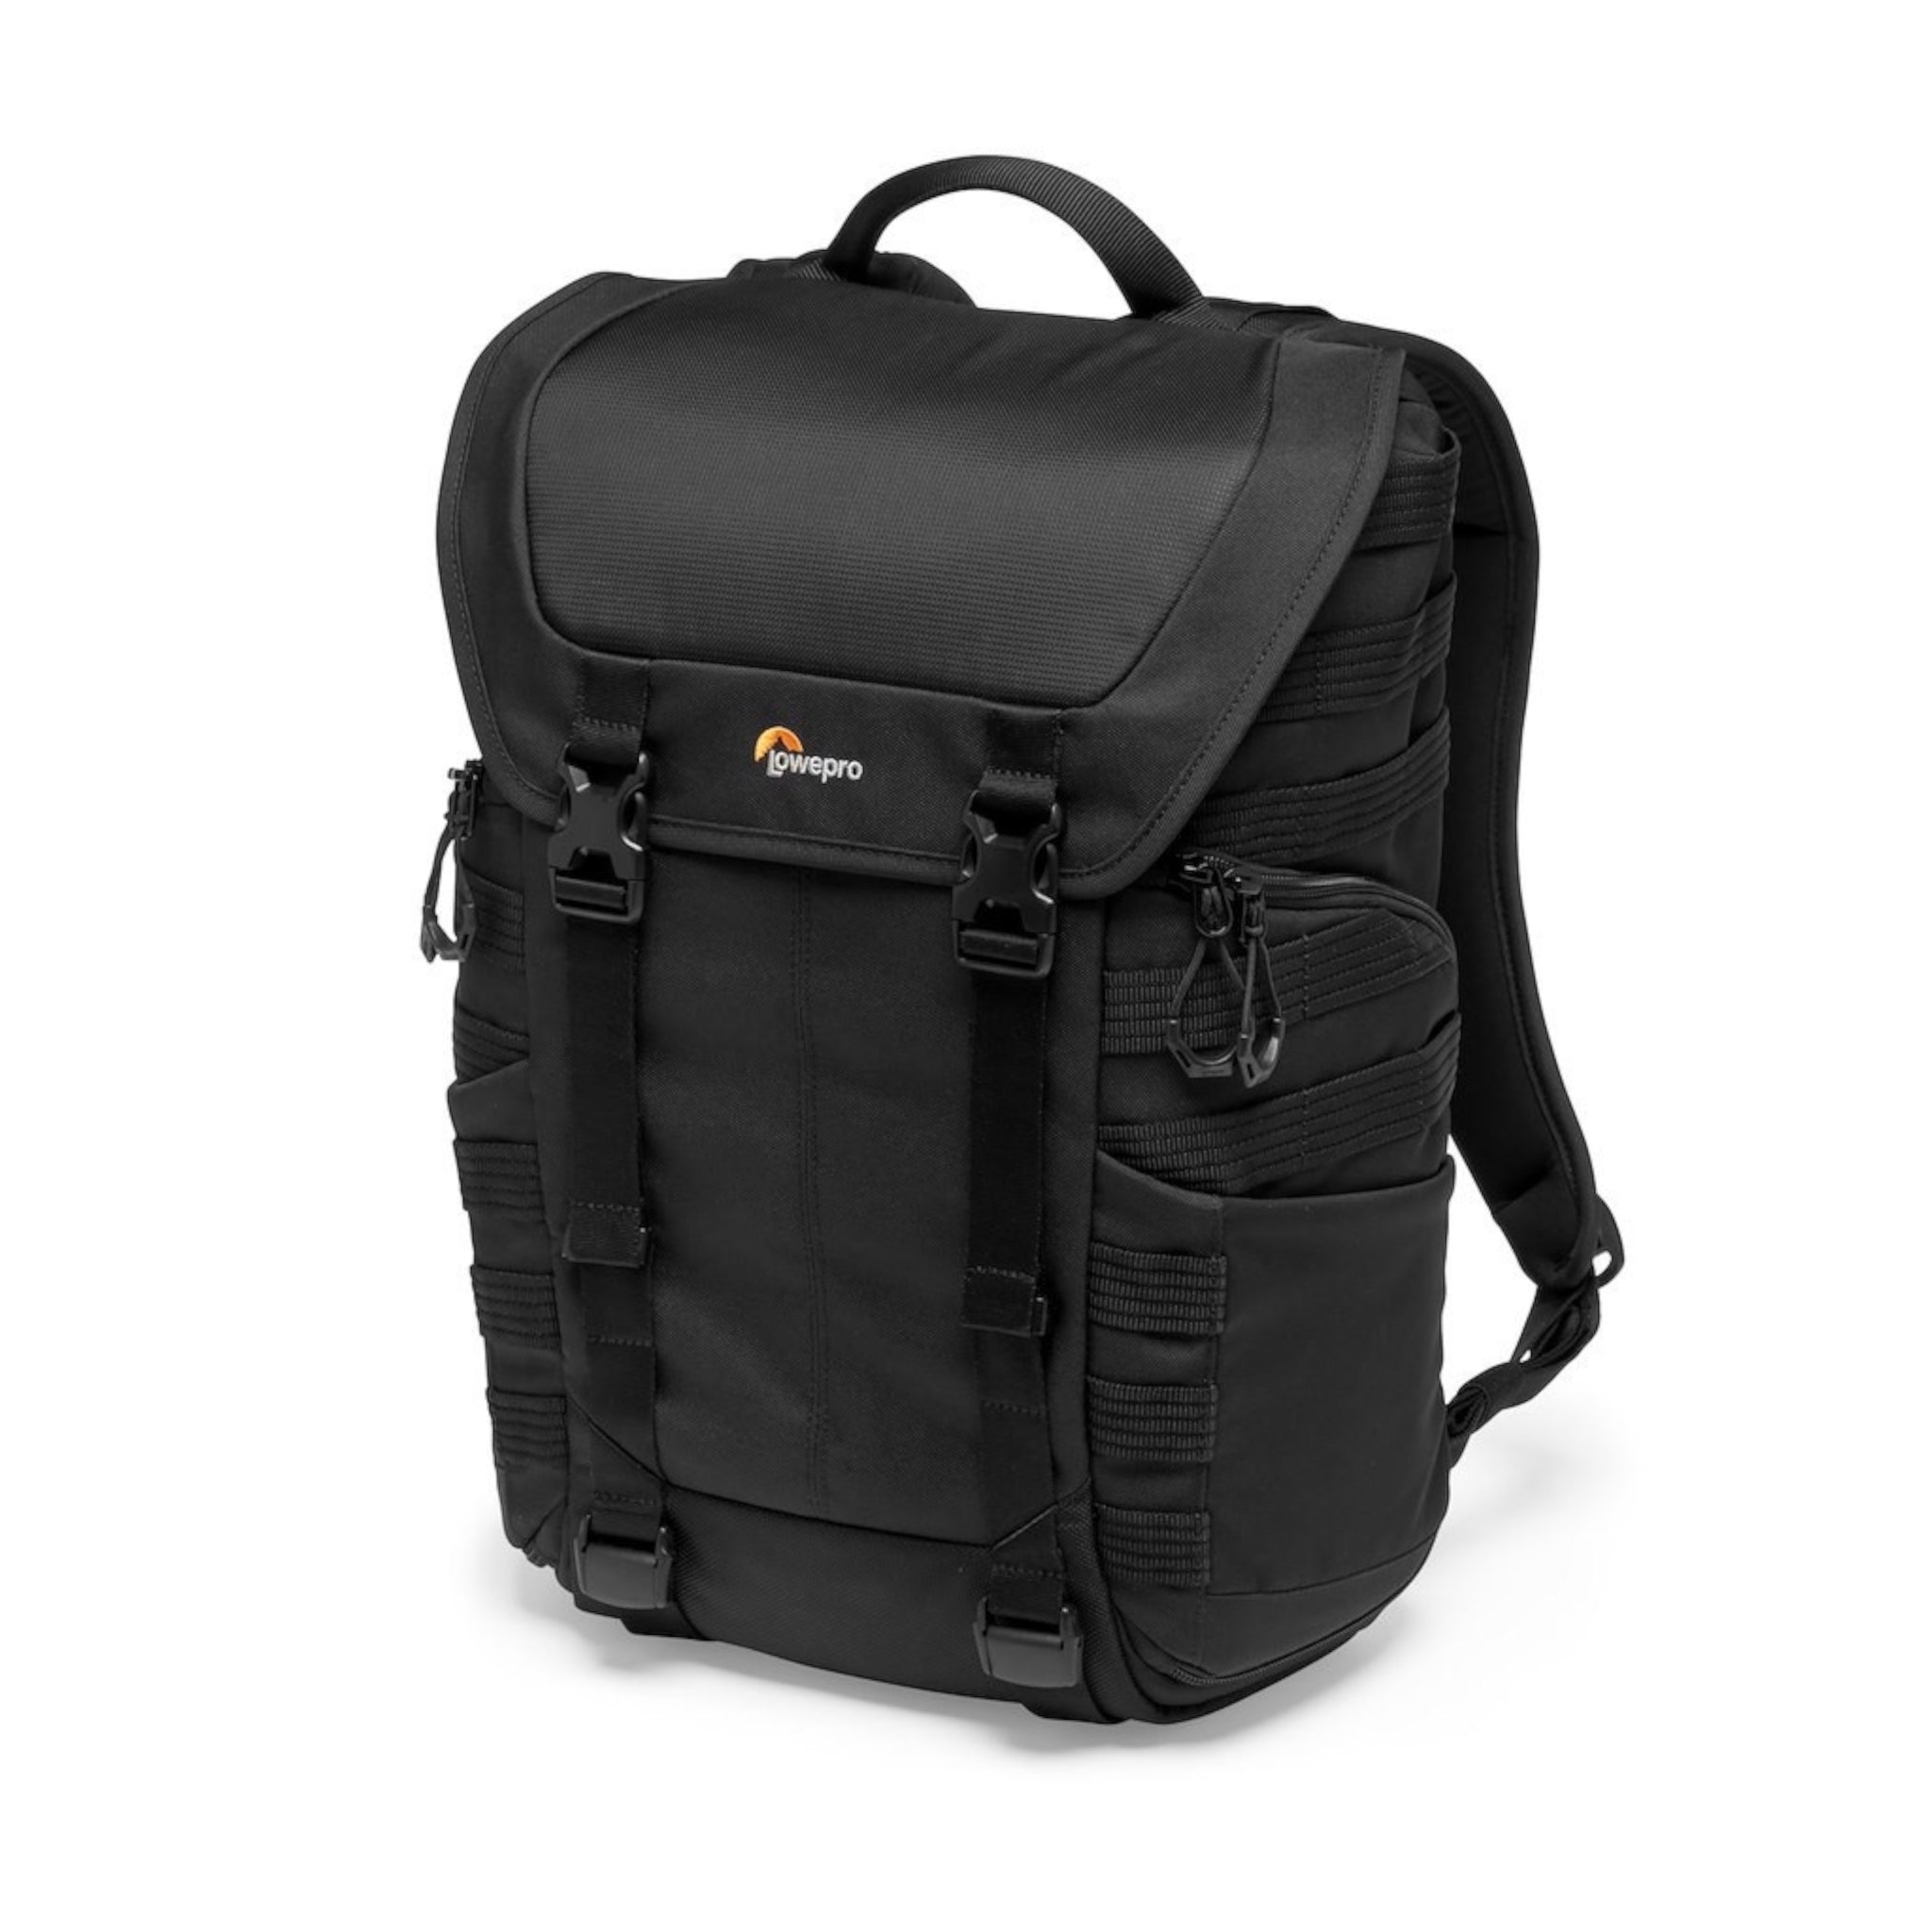 Lowepro Backpack BP300 AW II Protactic (Black)